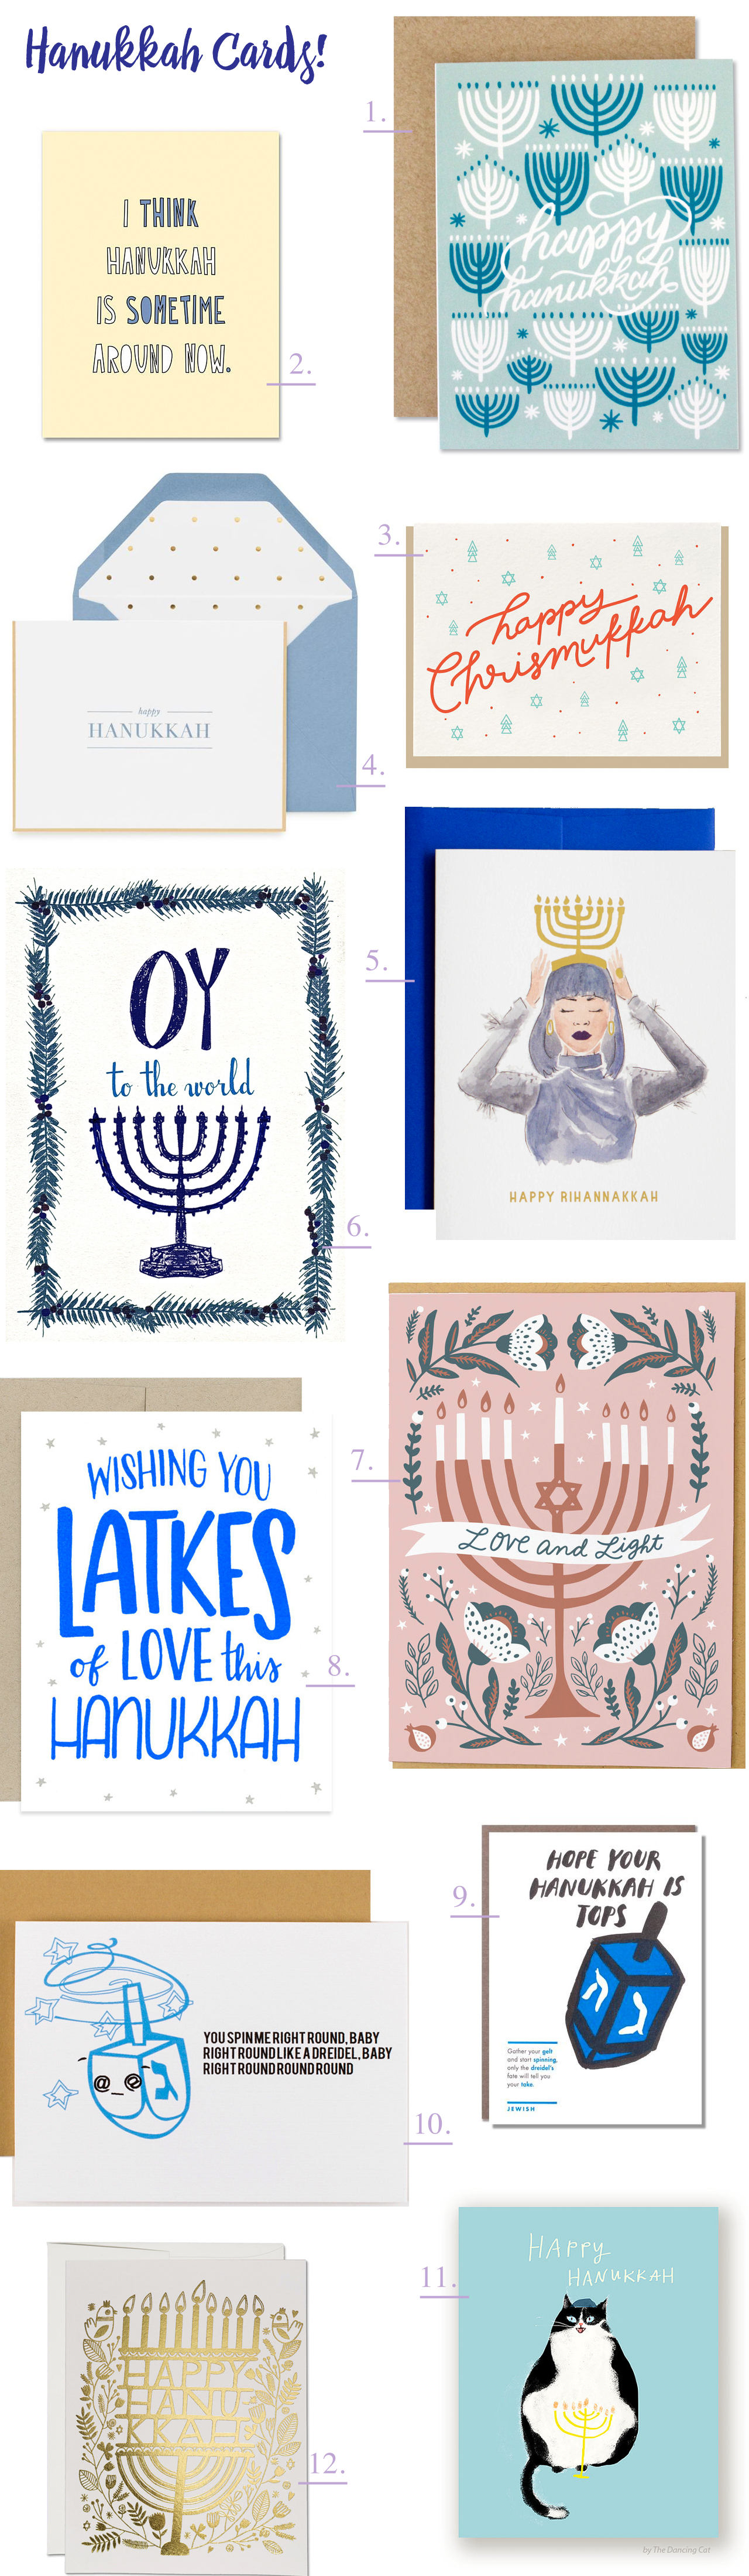 Beautiful Hanukkah Cards